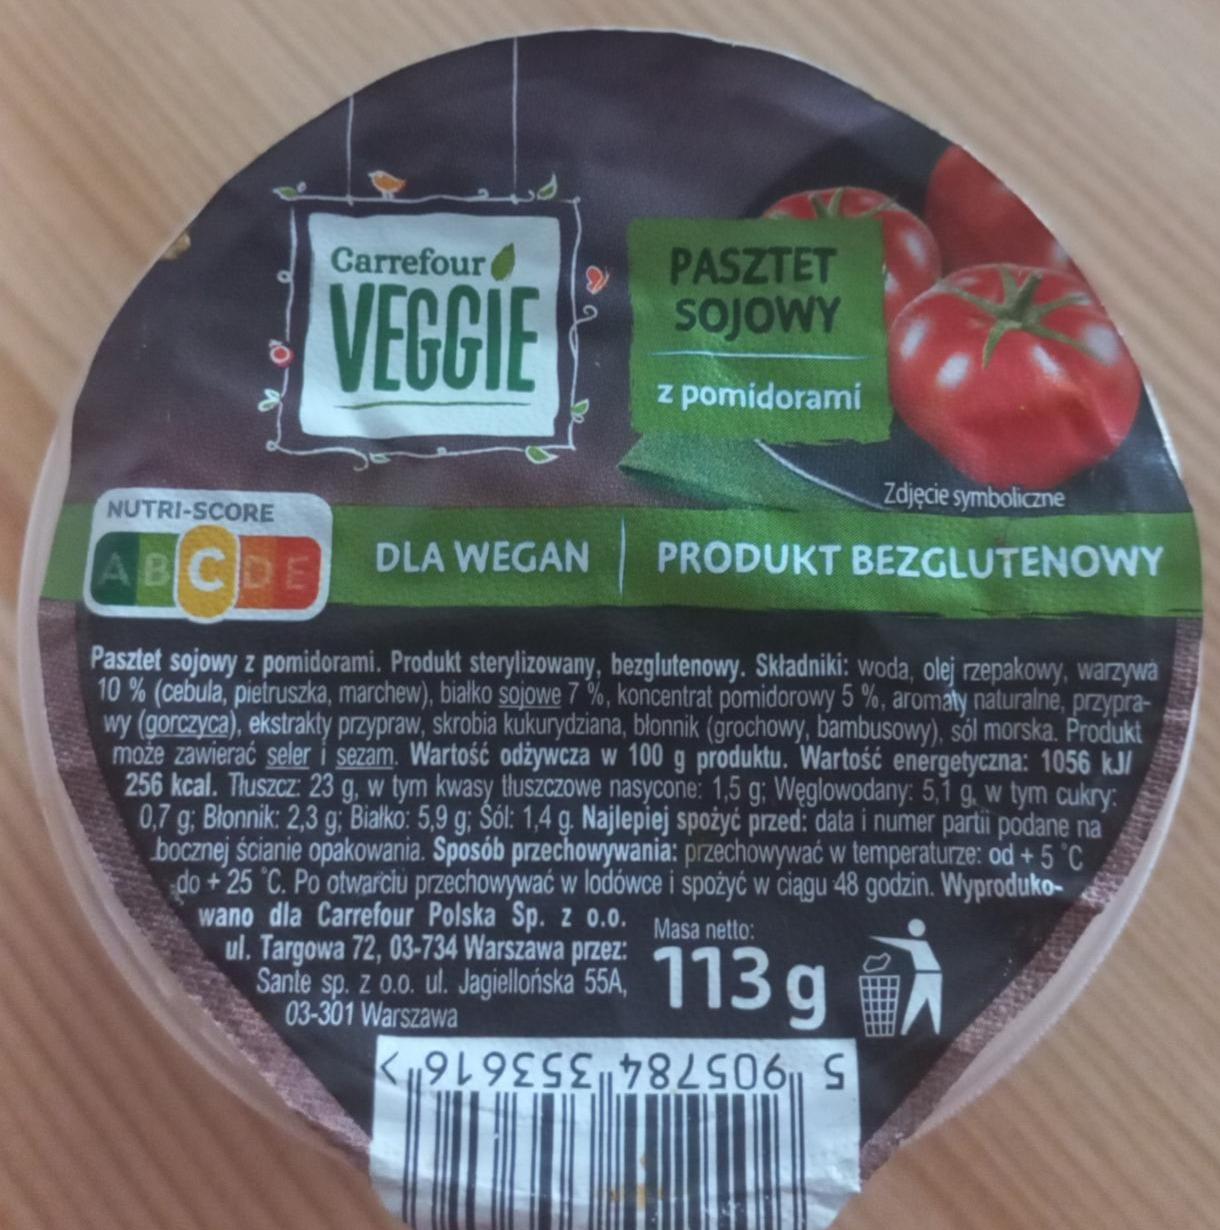 Zdjęcia - Pasztet Sojowy z pomidorami Carrefour Veggie